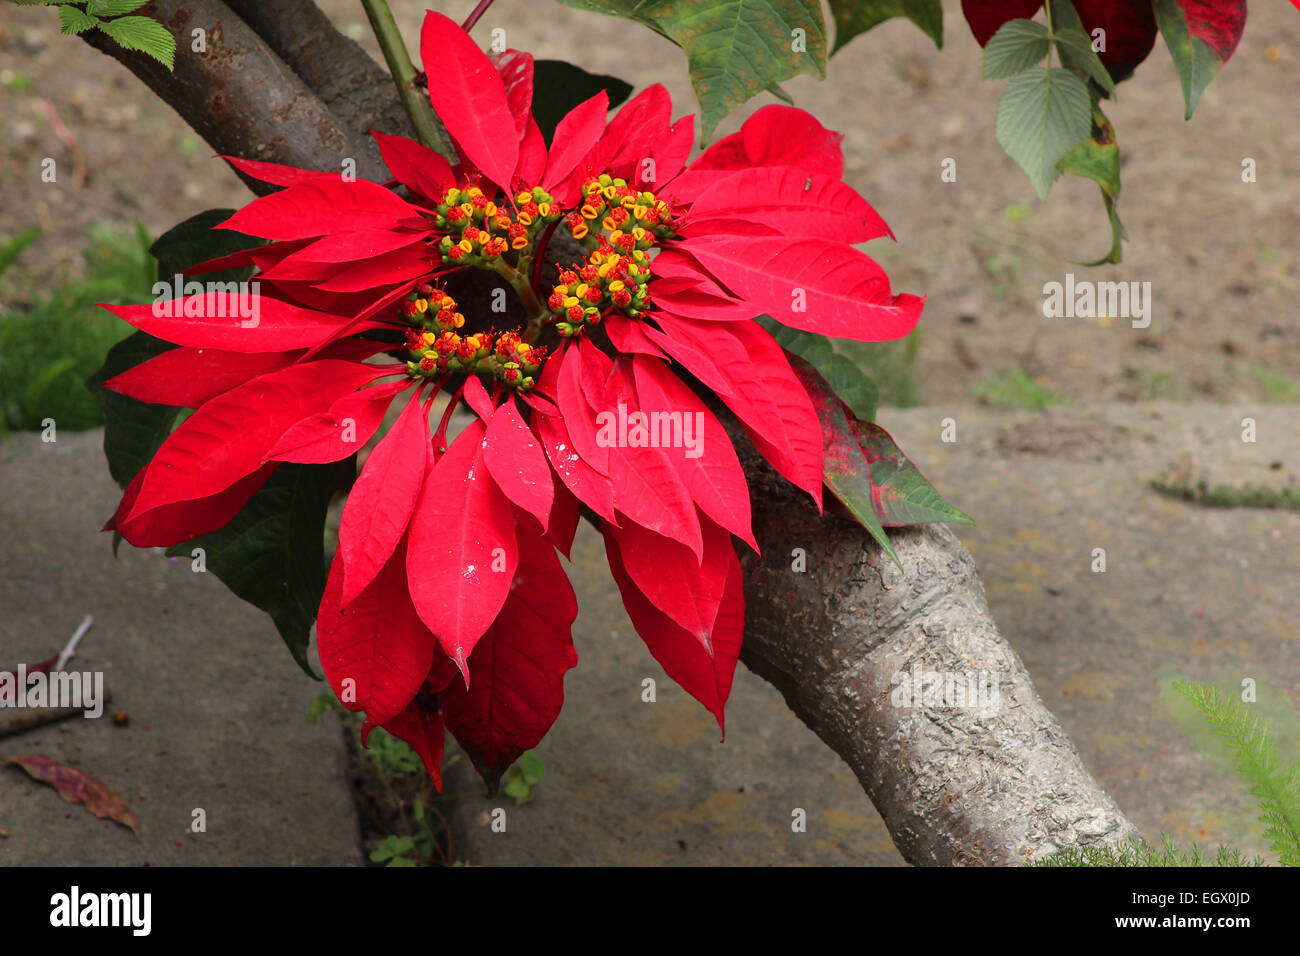 A red poinsettia growing in a flower garden in Cotacachi, Ecuador Stock Photo